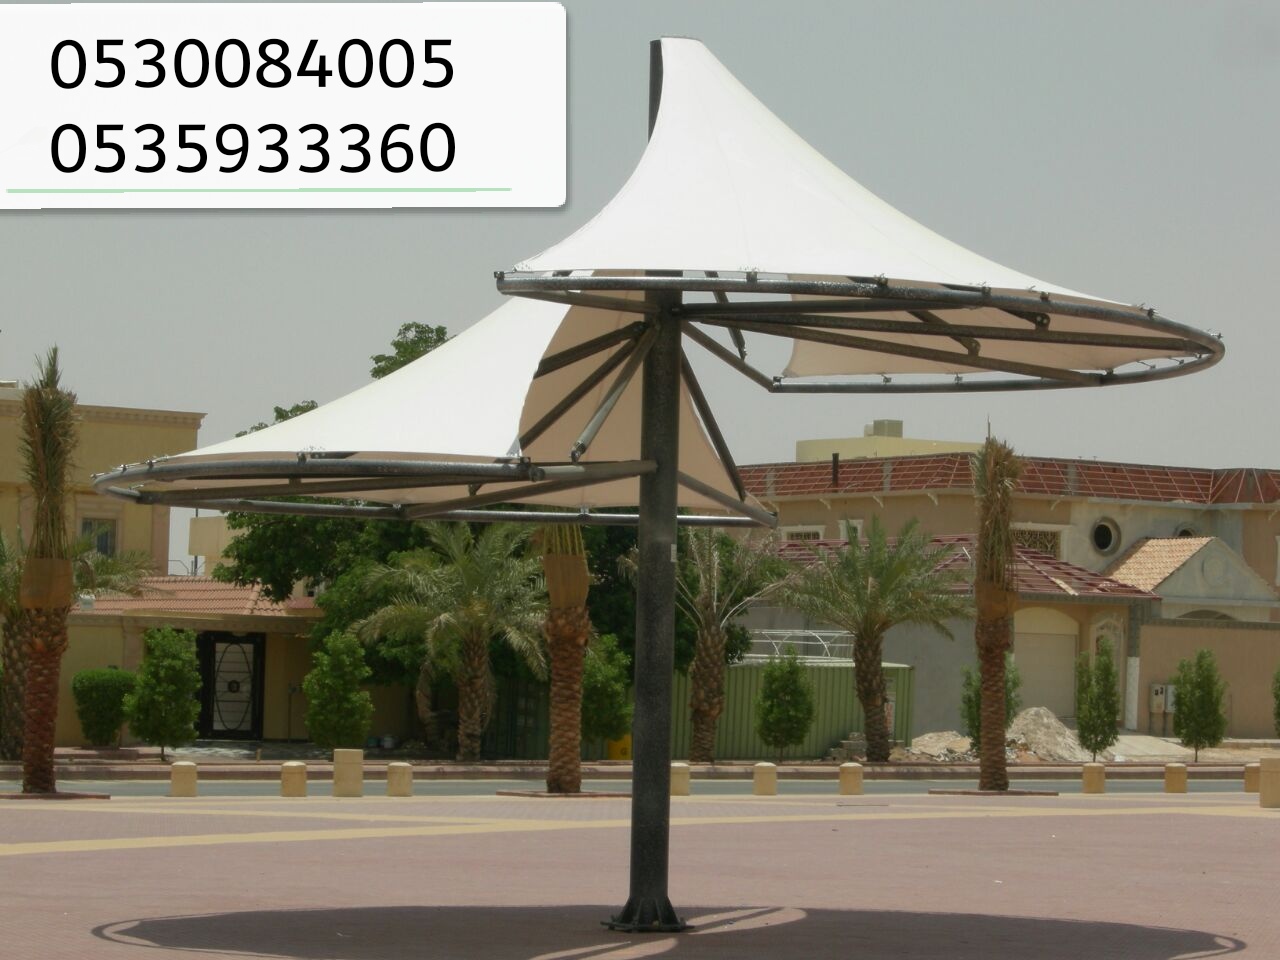 مؤسسة رواق المستقبل لبيع الحواجز والمصدات والمناهيل الخرسانيه في الرياض 0530084005 P_1502ptydy1